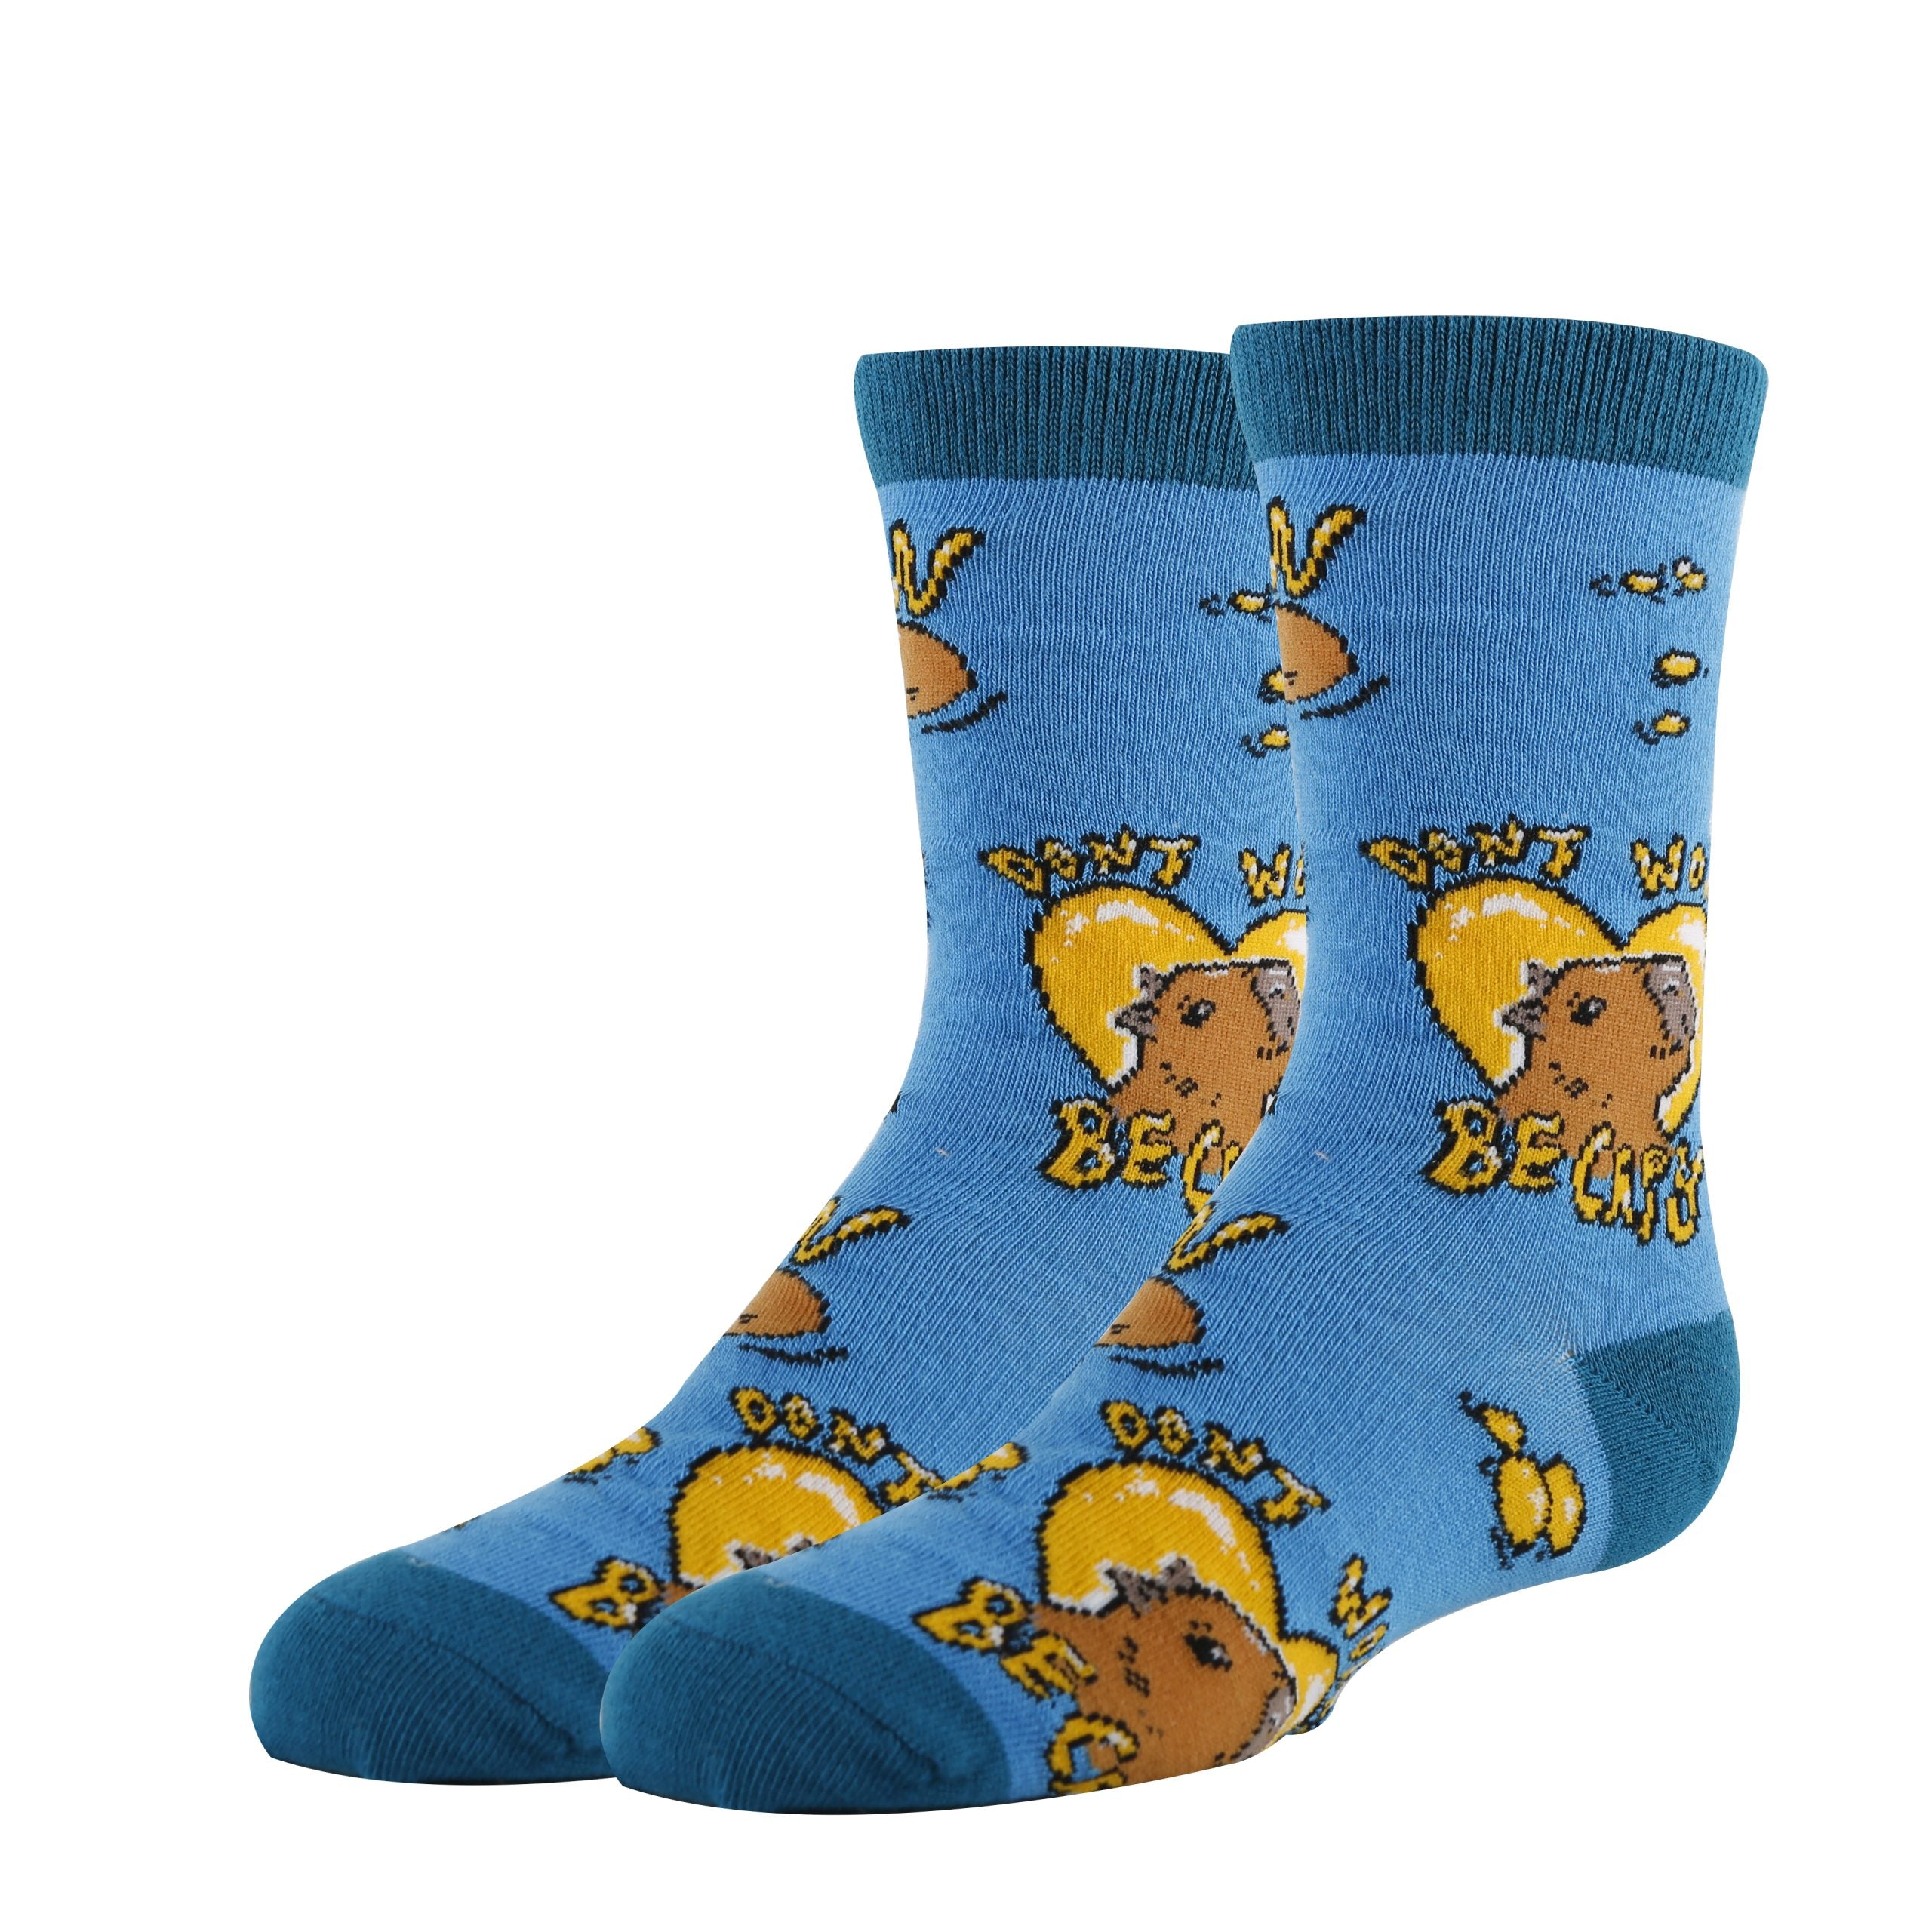 Be Capy Socks | Funny Crew Socks for Kids